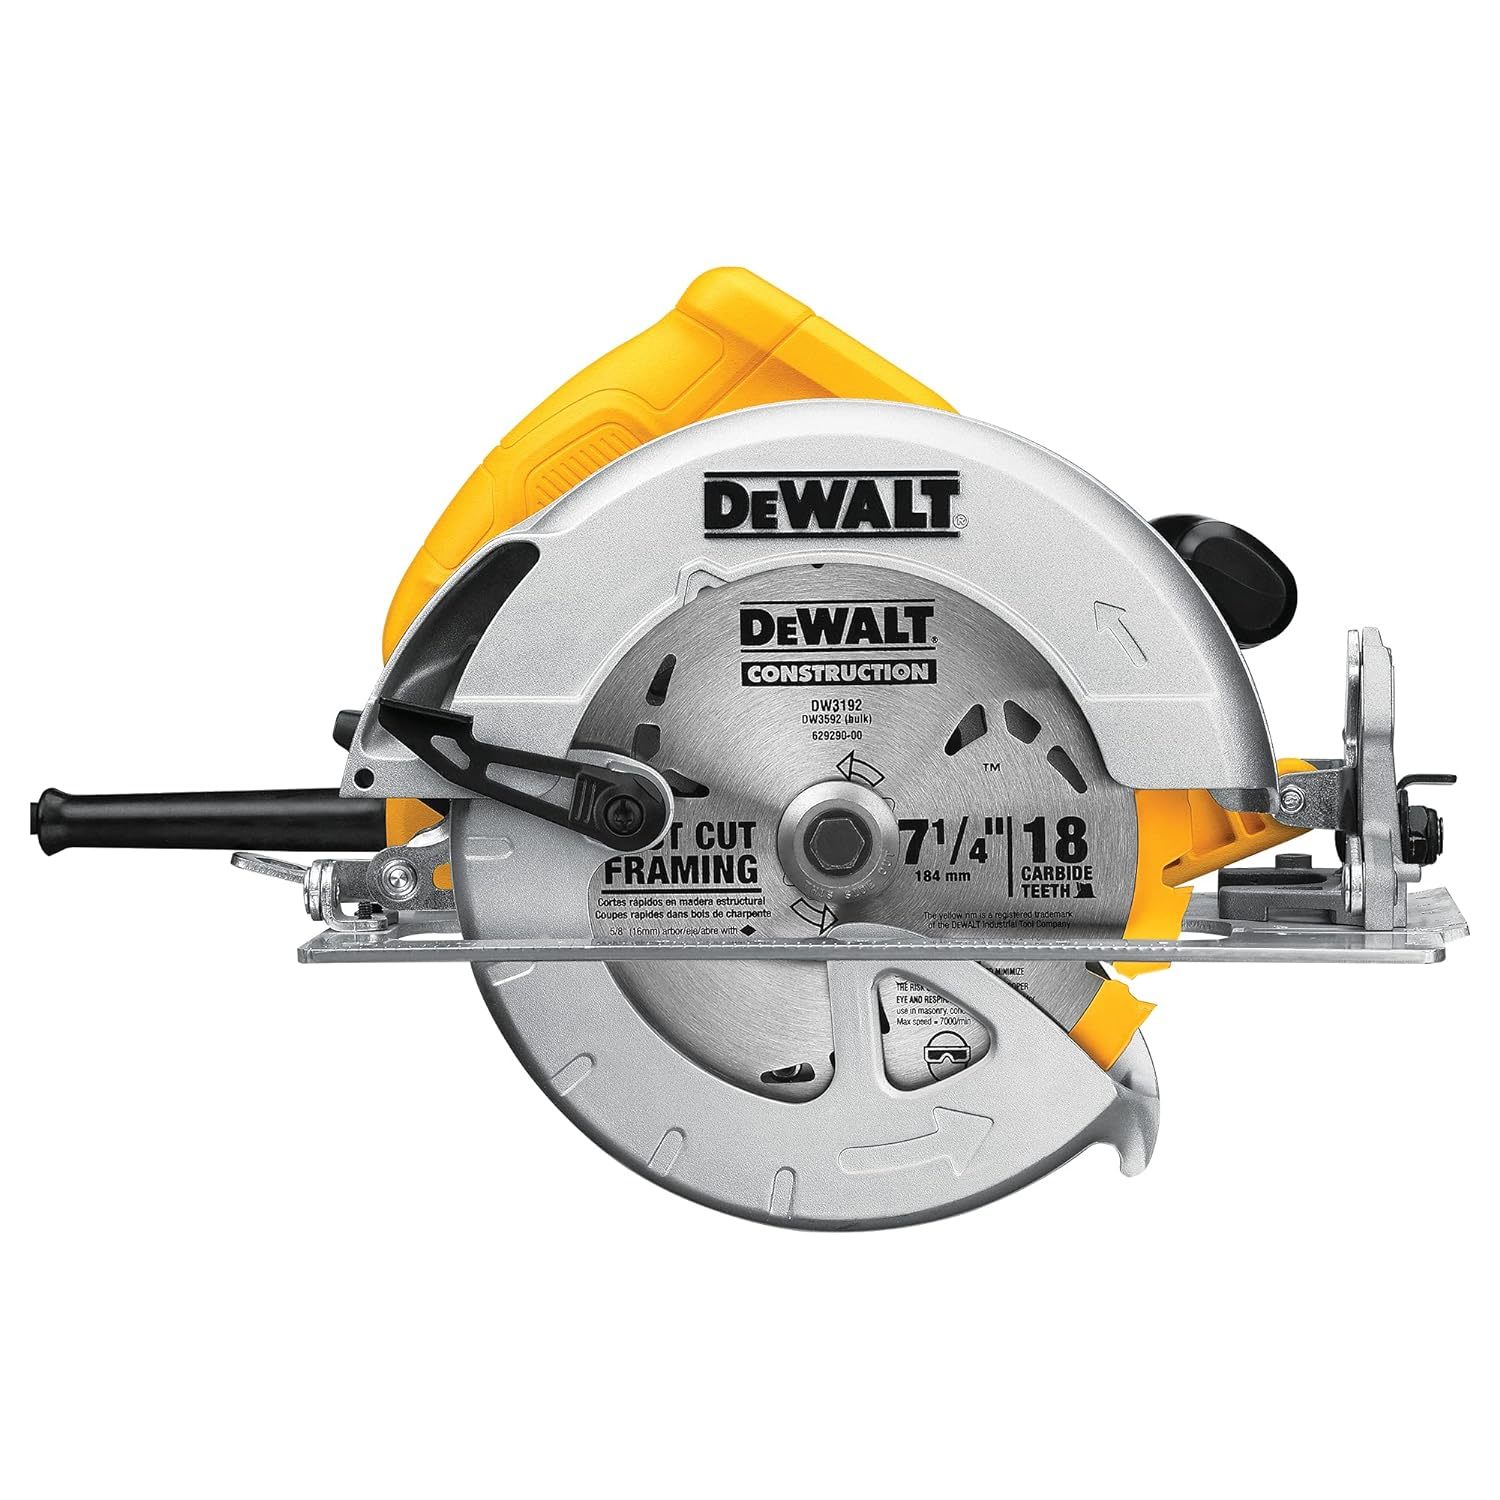 DEWALT 7-1/4-Inch Circular Saw, Lightweight, Corded (DWE575) - $215.99